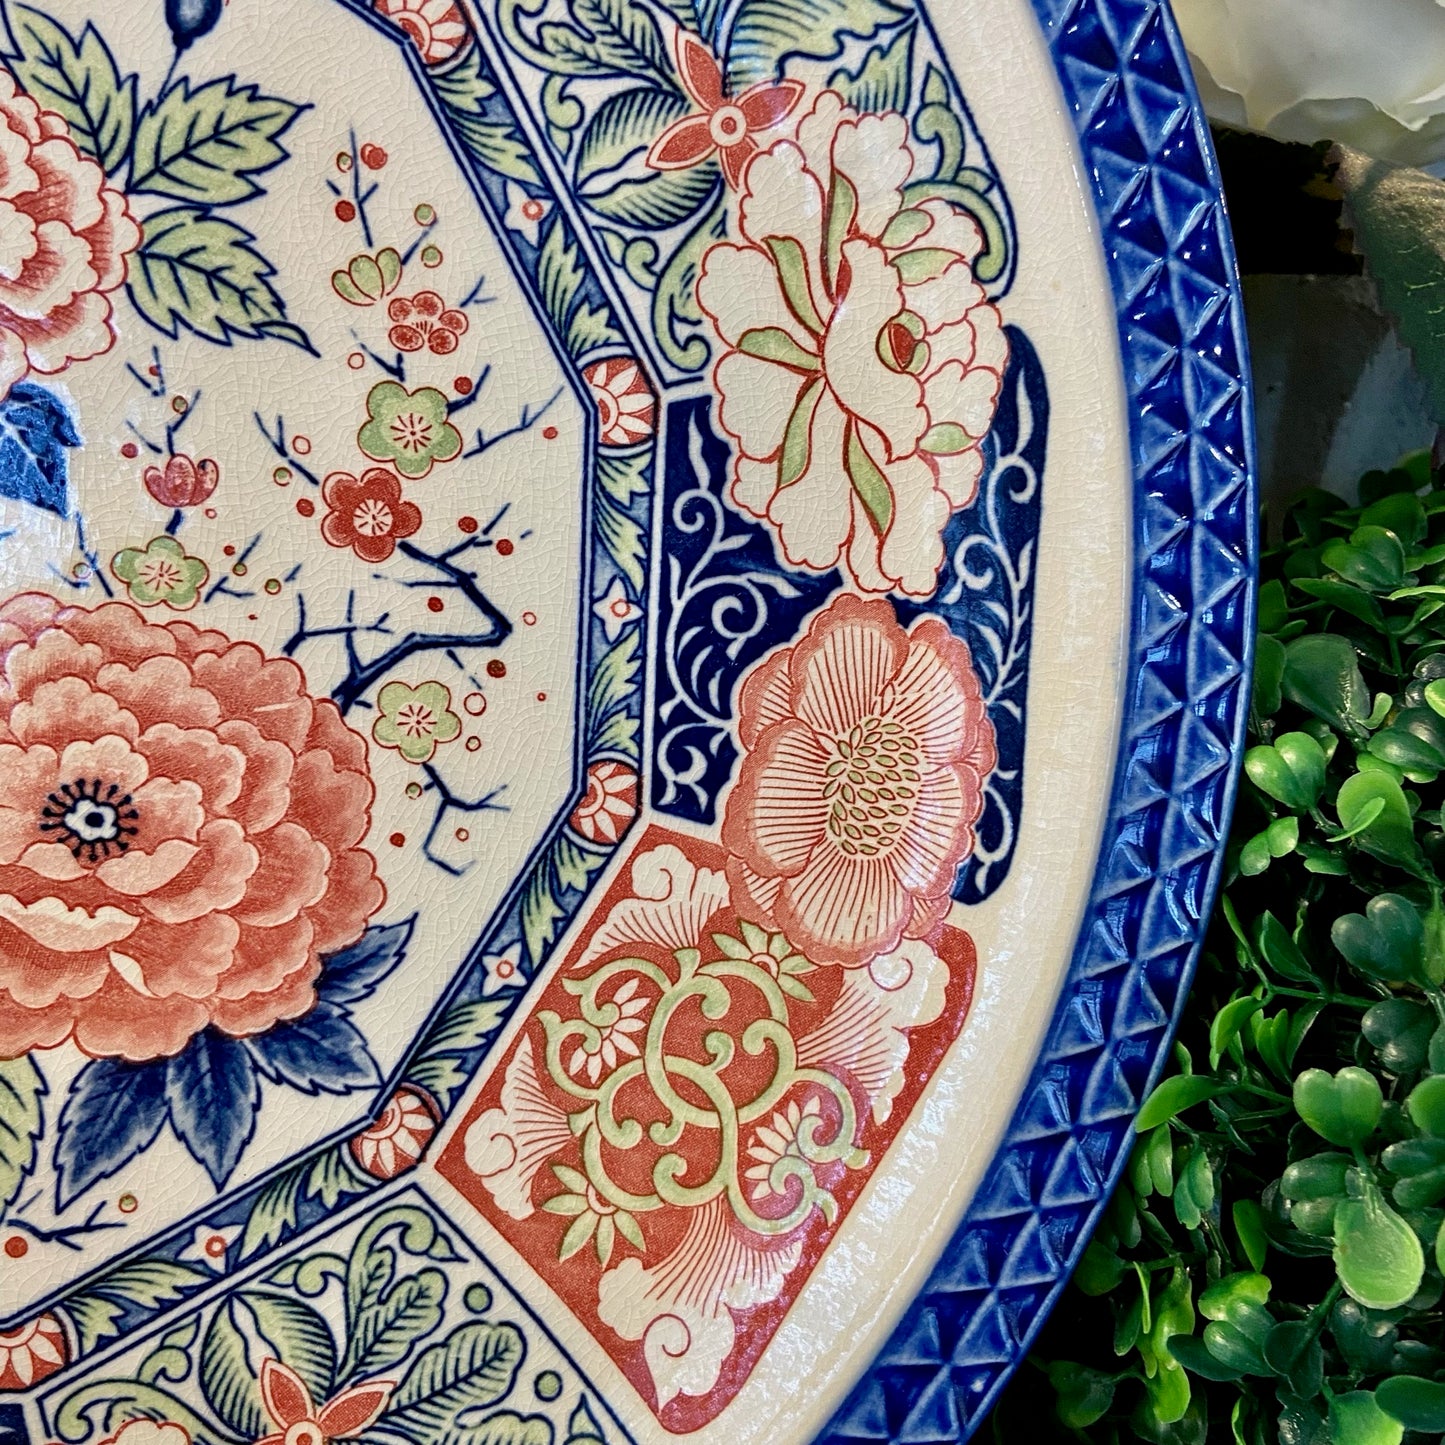 Vintage chinoiserie botanical blue & white Imari large round platter.